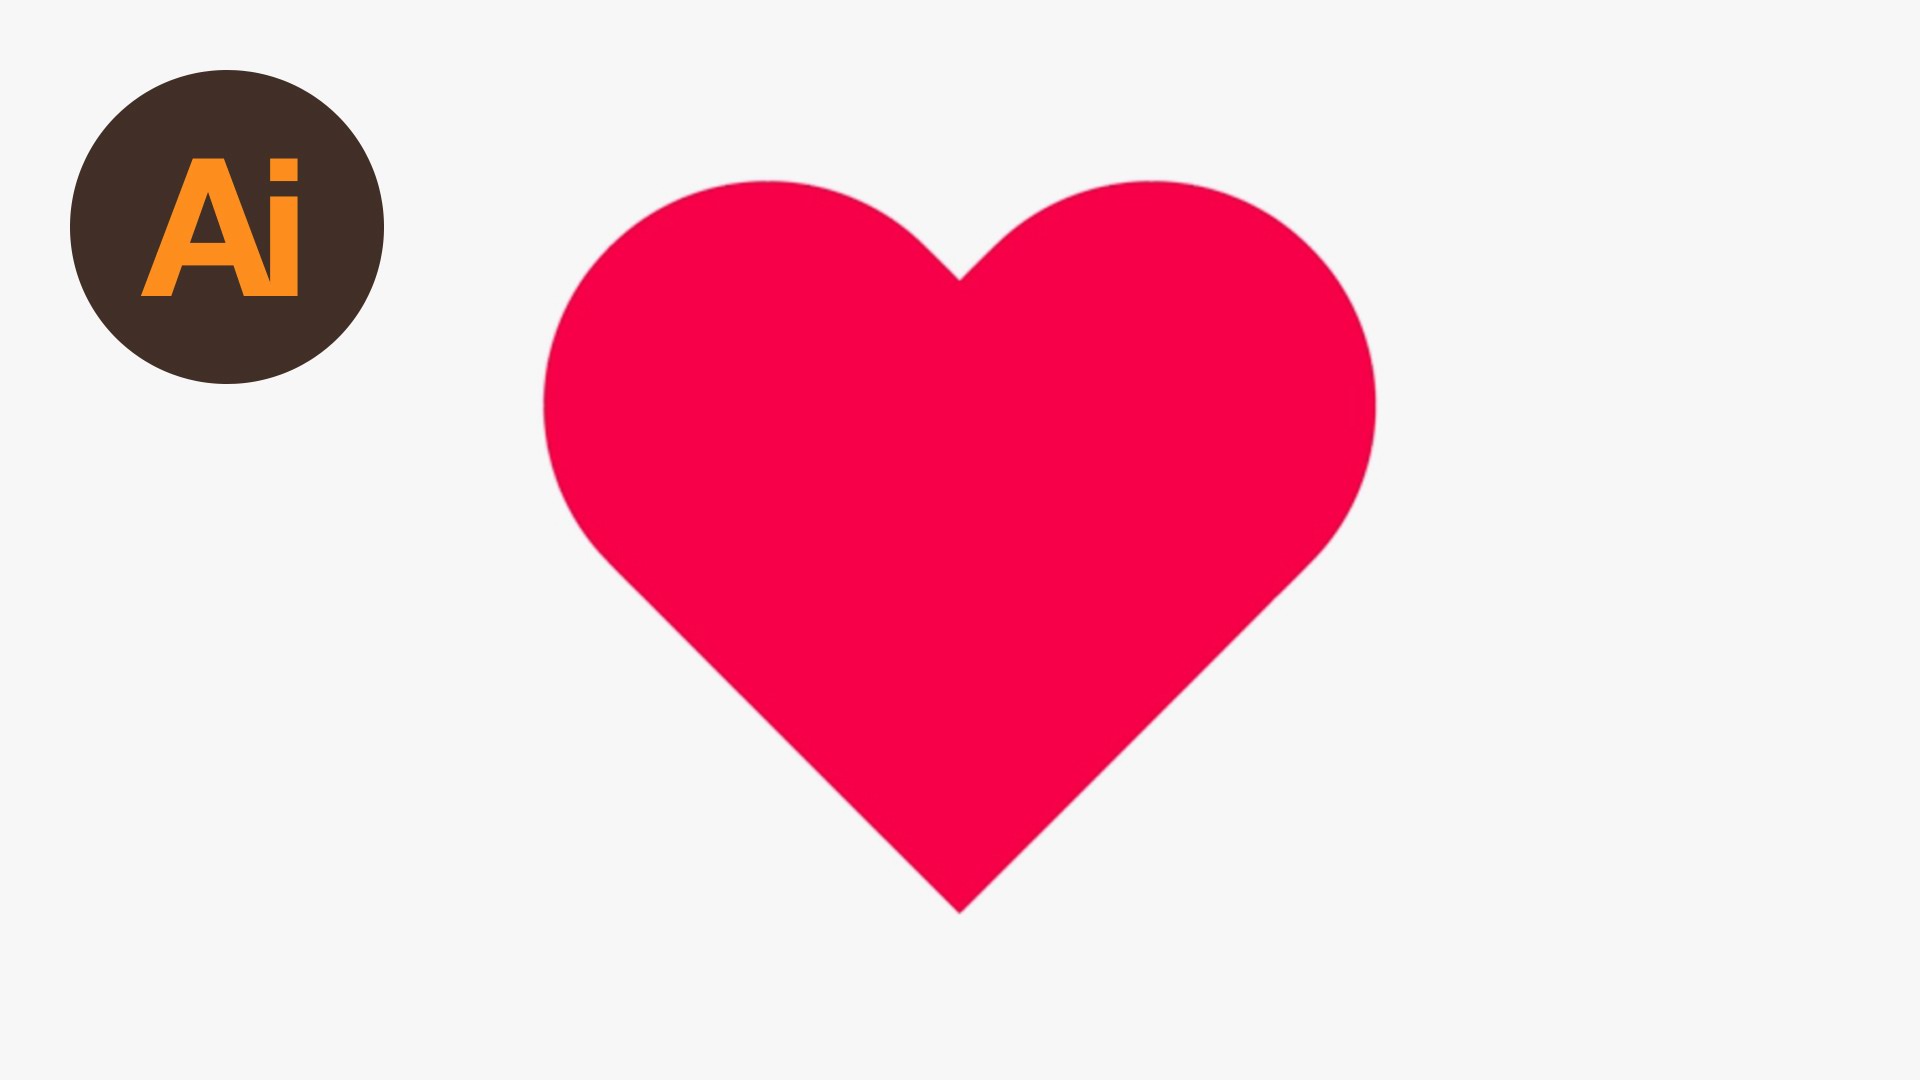 Learn How to Draw a Heart Shape in Adobe Illustrator | Dansky ...